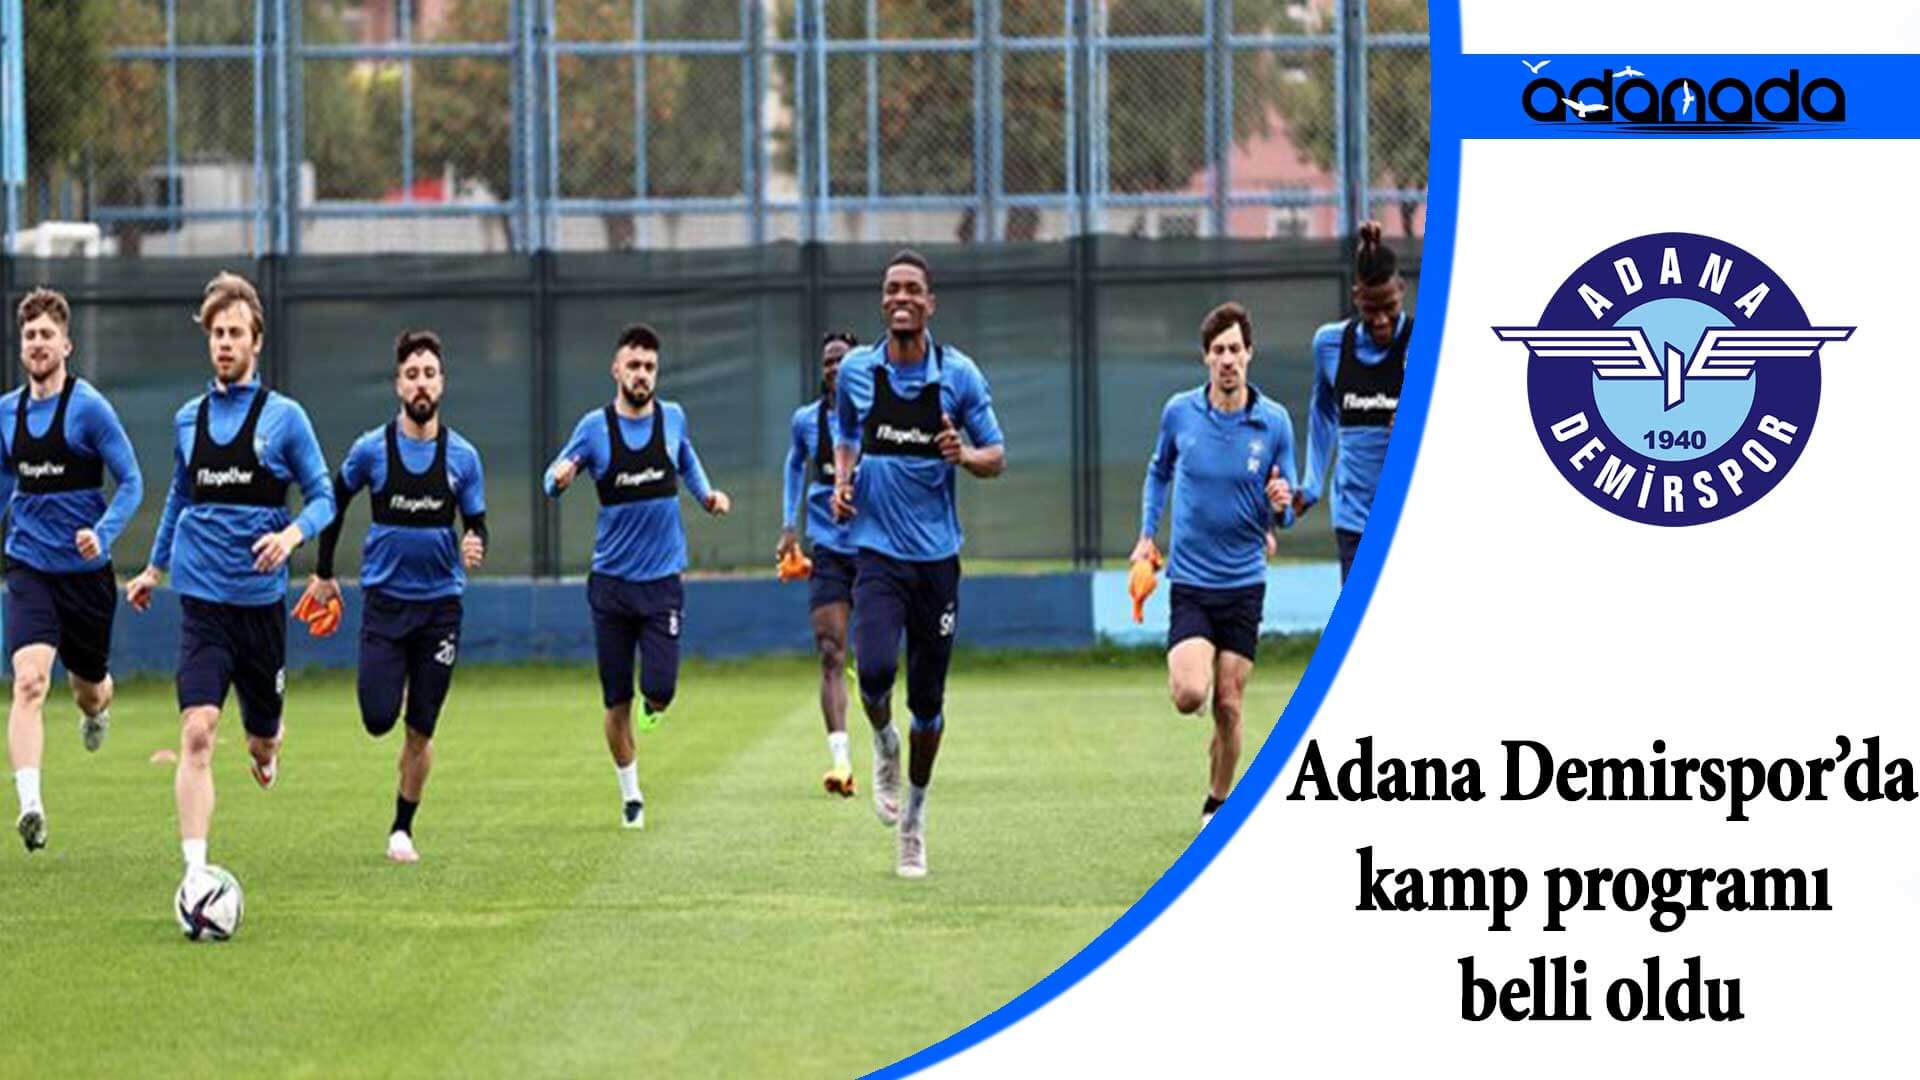 Adana Demirspor’da kamp programı belli oldu